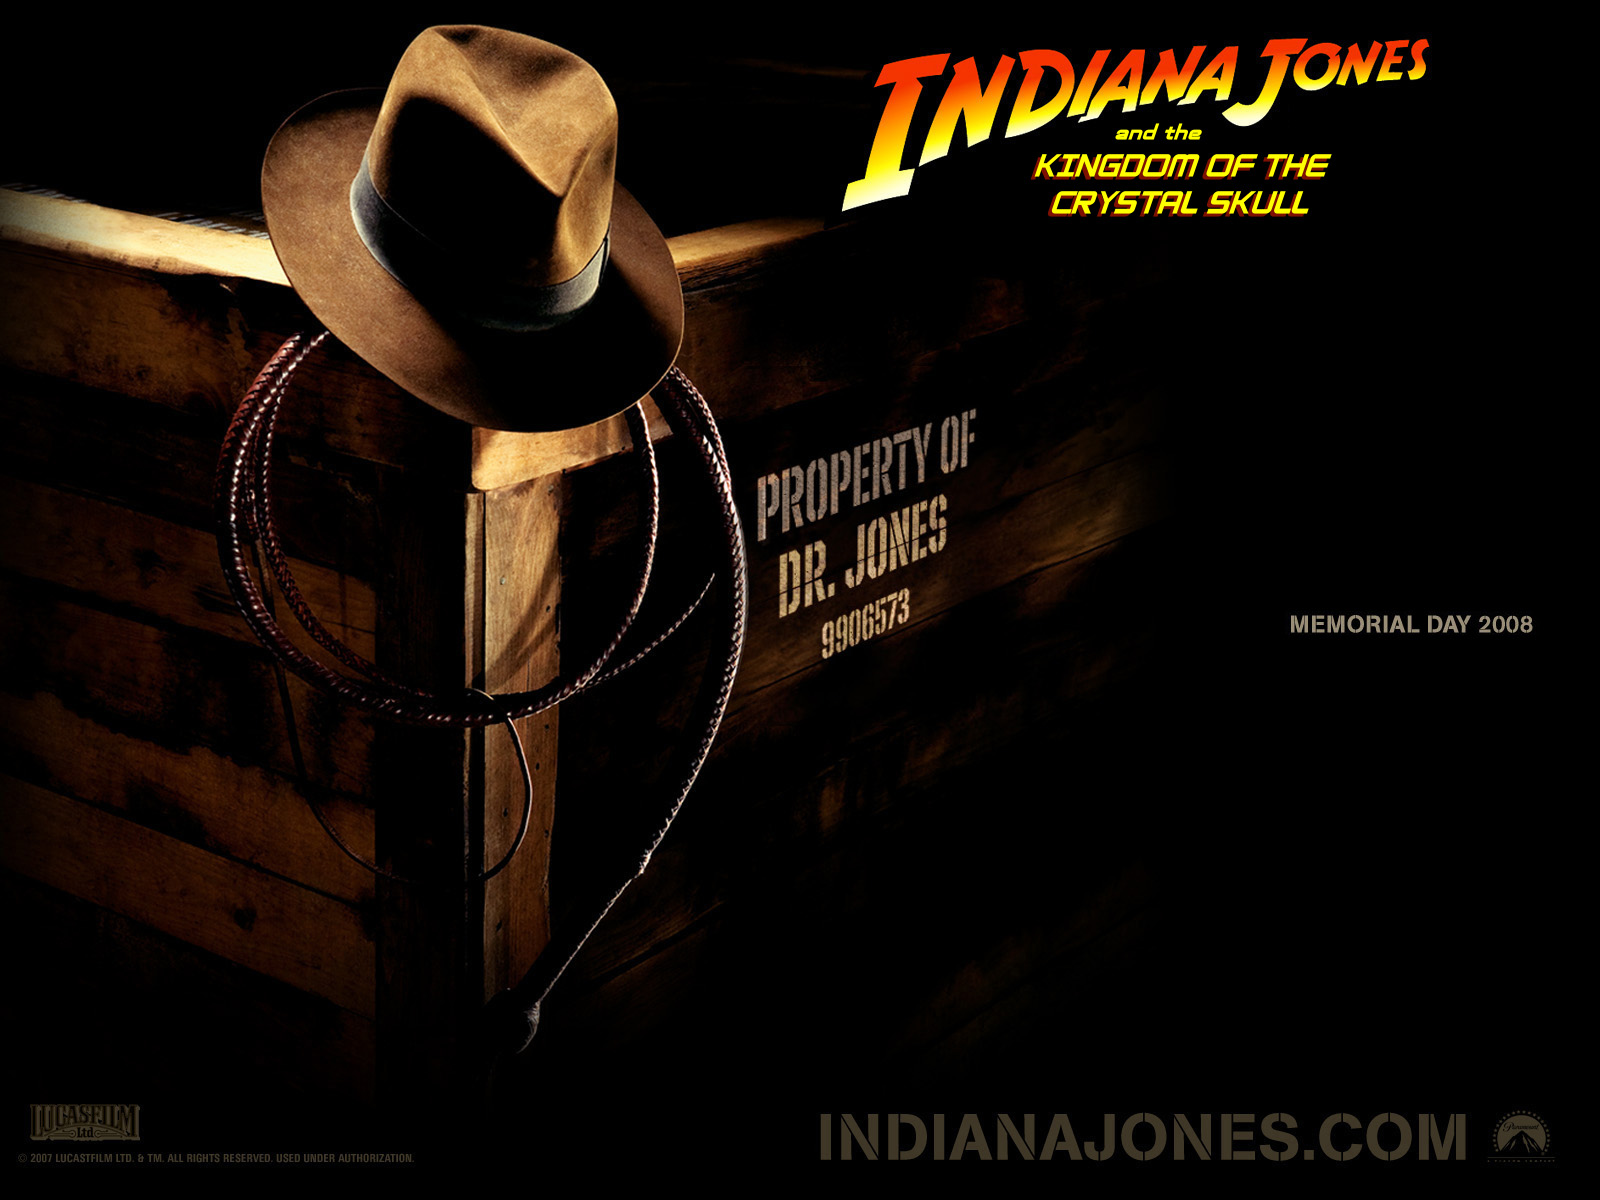 Fond d'ecran Indiana Jones